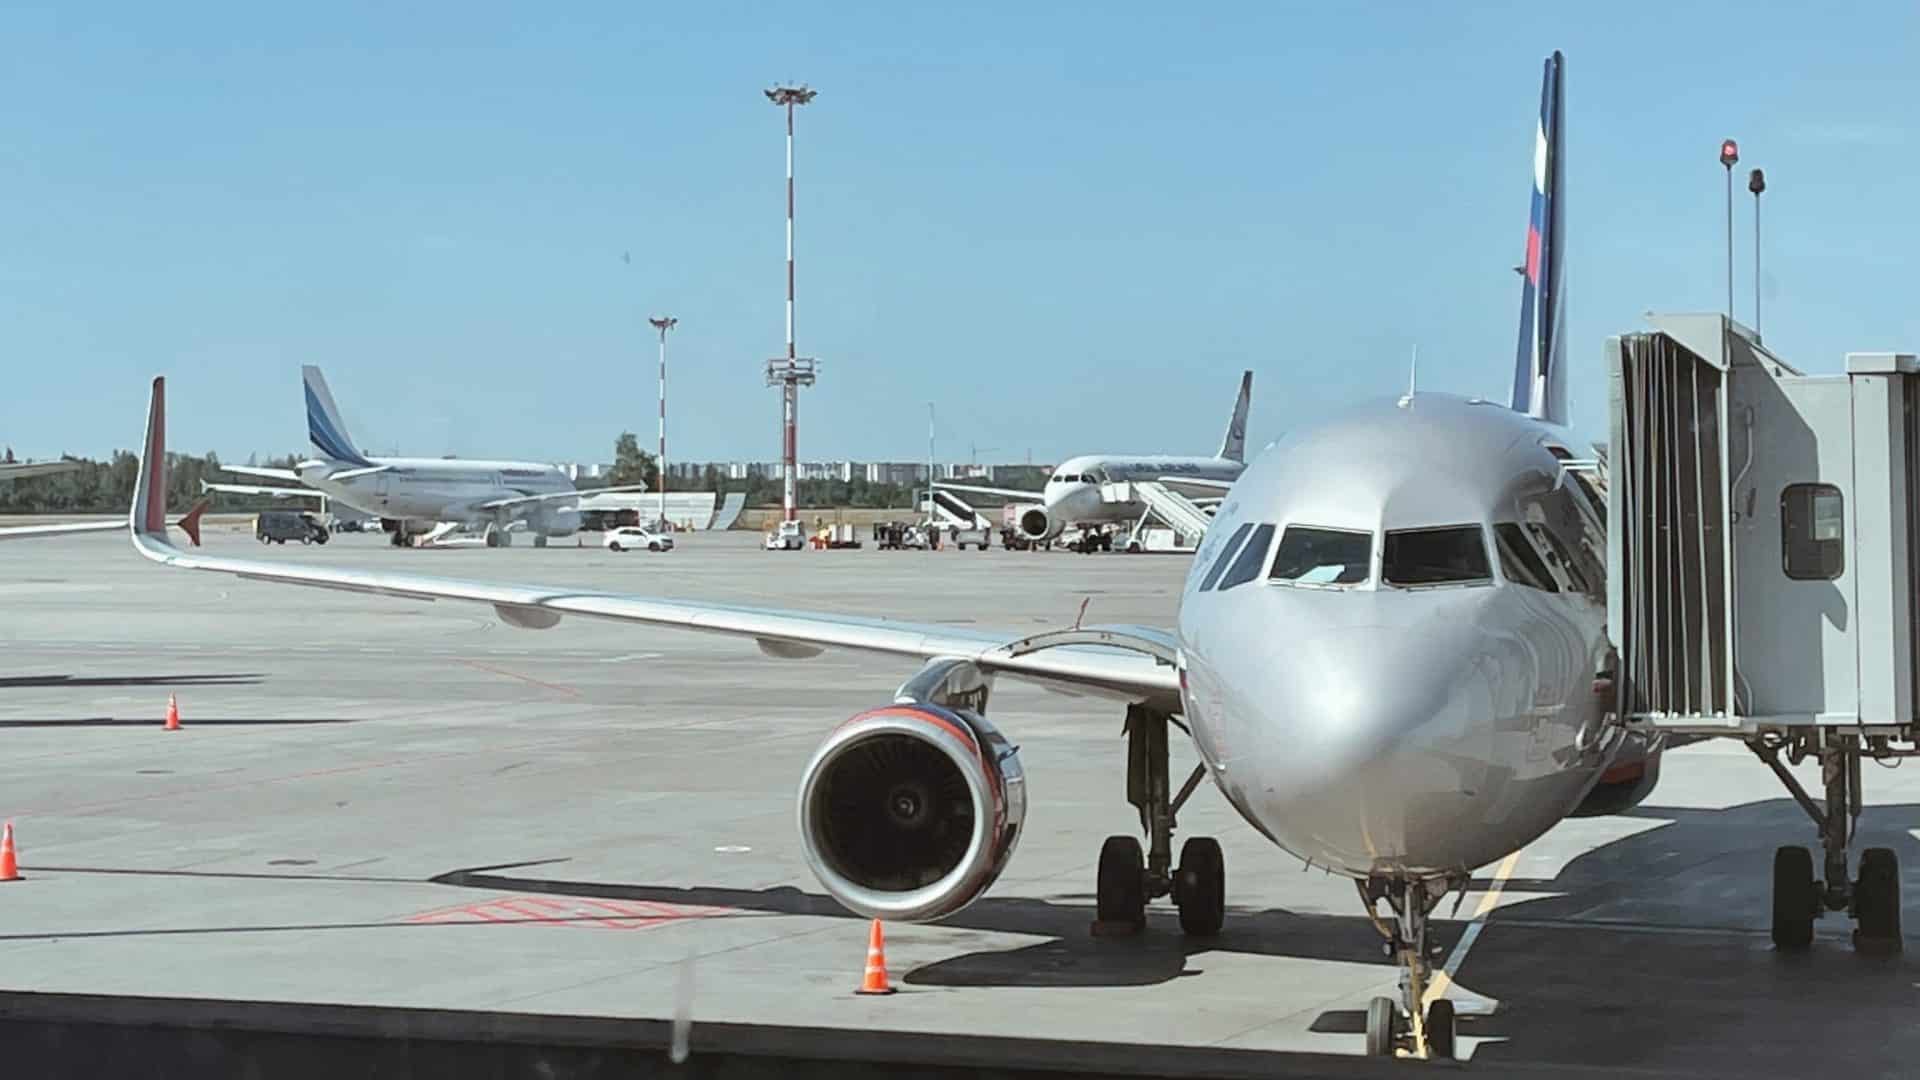 Flugzeug parkt am Flughafen